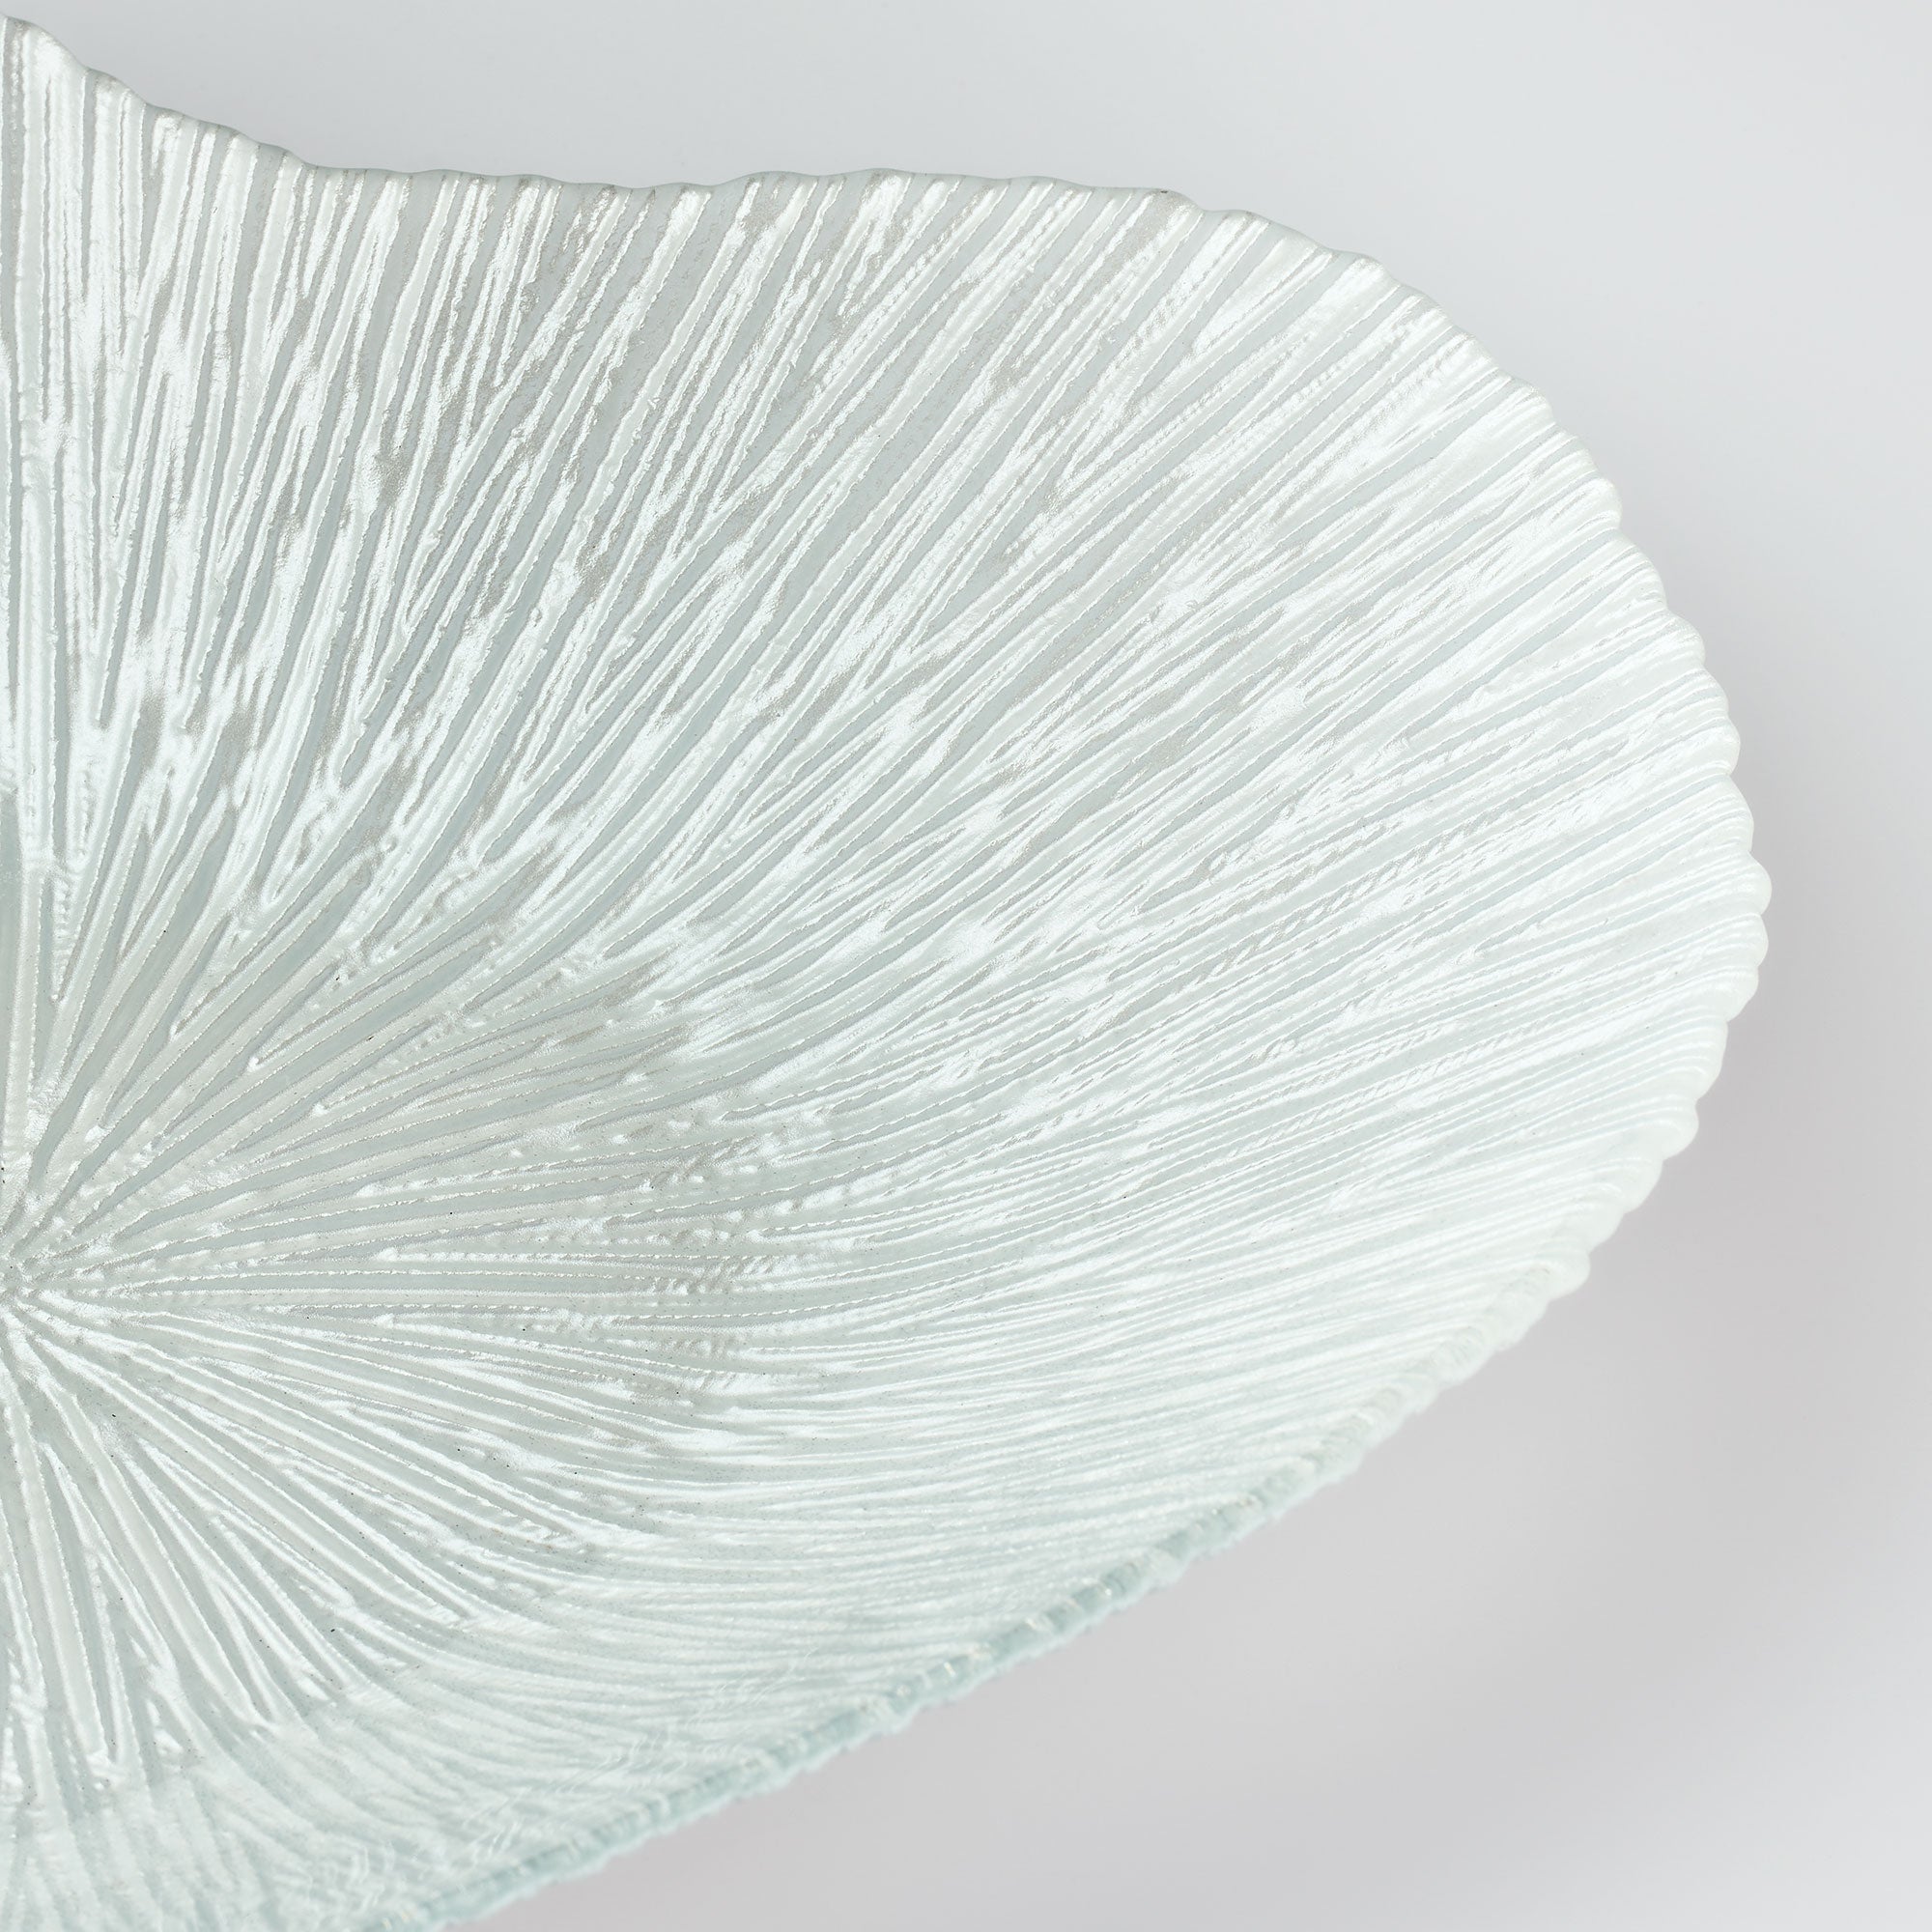 Glass Bowl - Heart Design - Silver - Aspire Art Glass